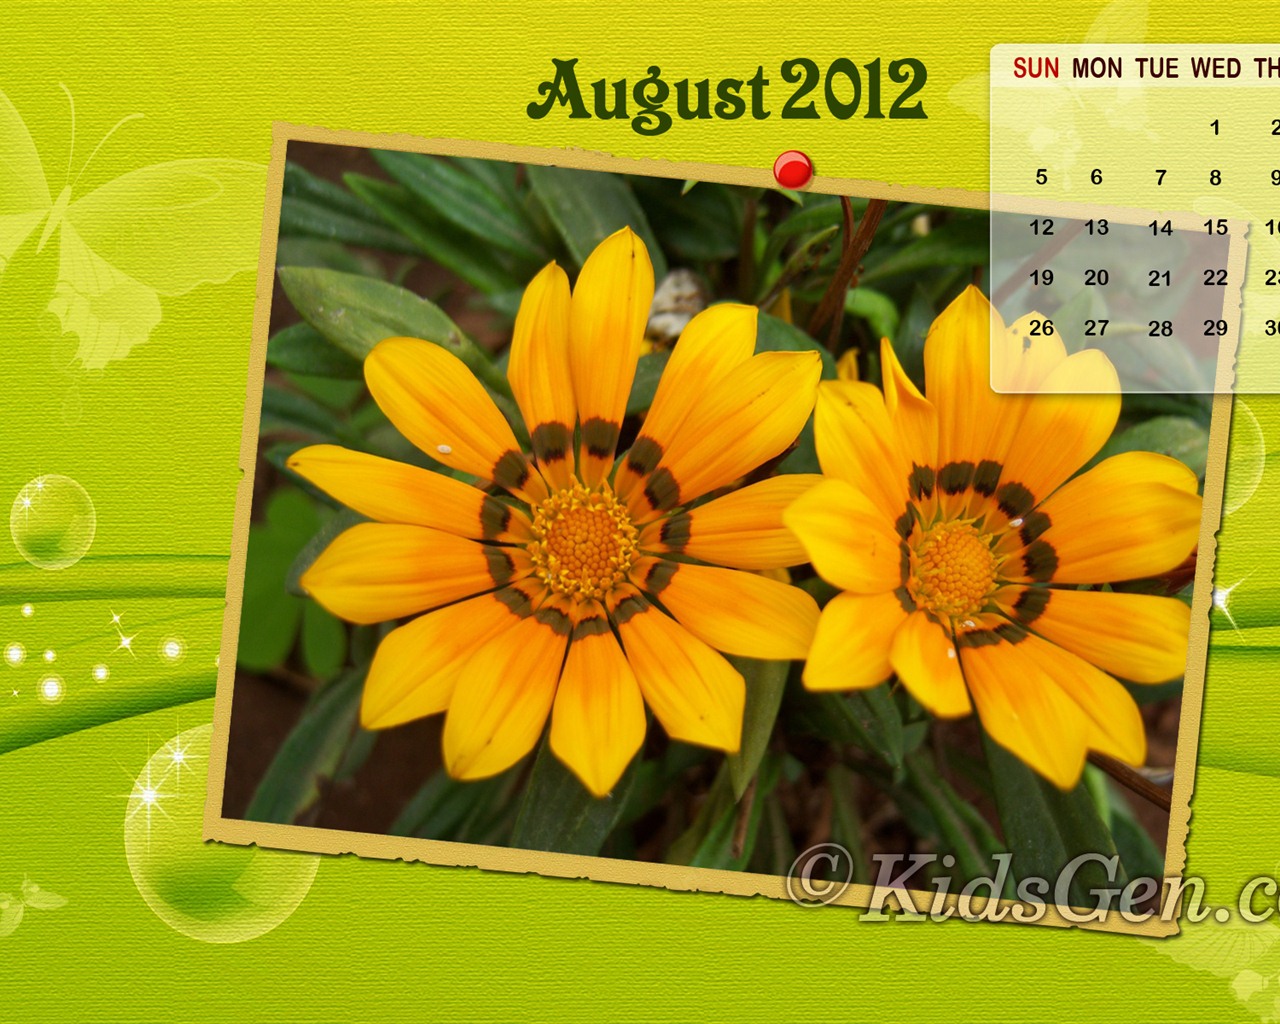 August 2012 Calendar wallpapers (2) #13 - 1280x1024